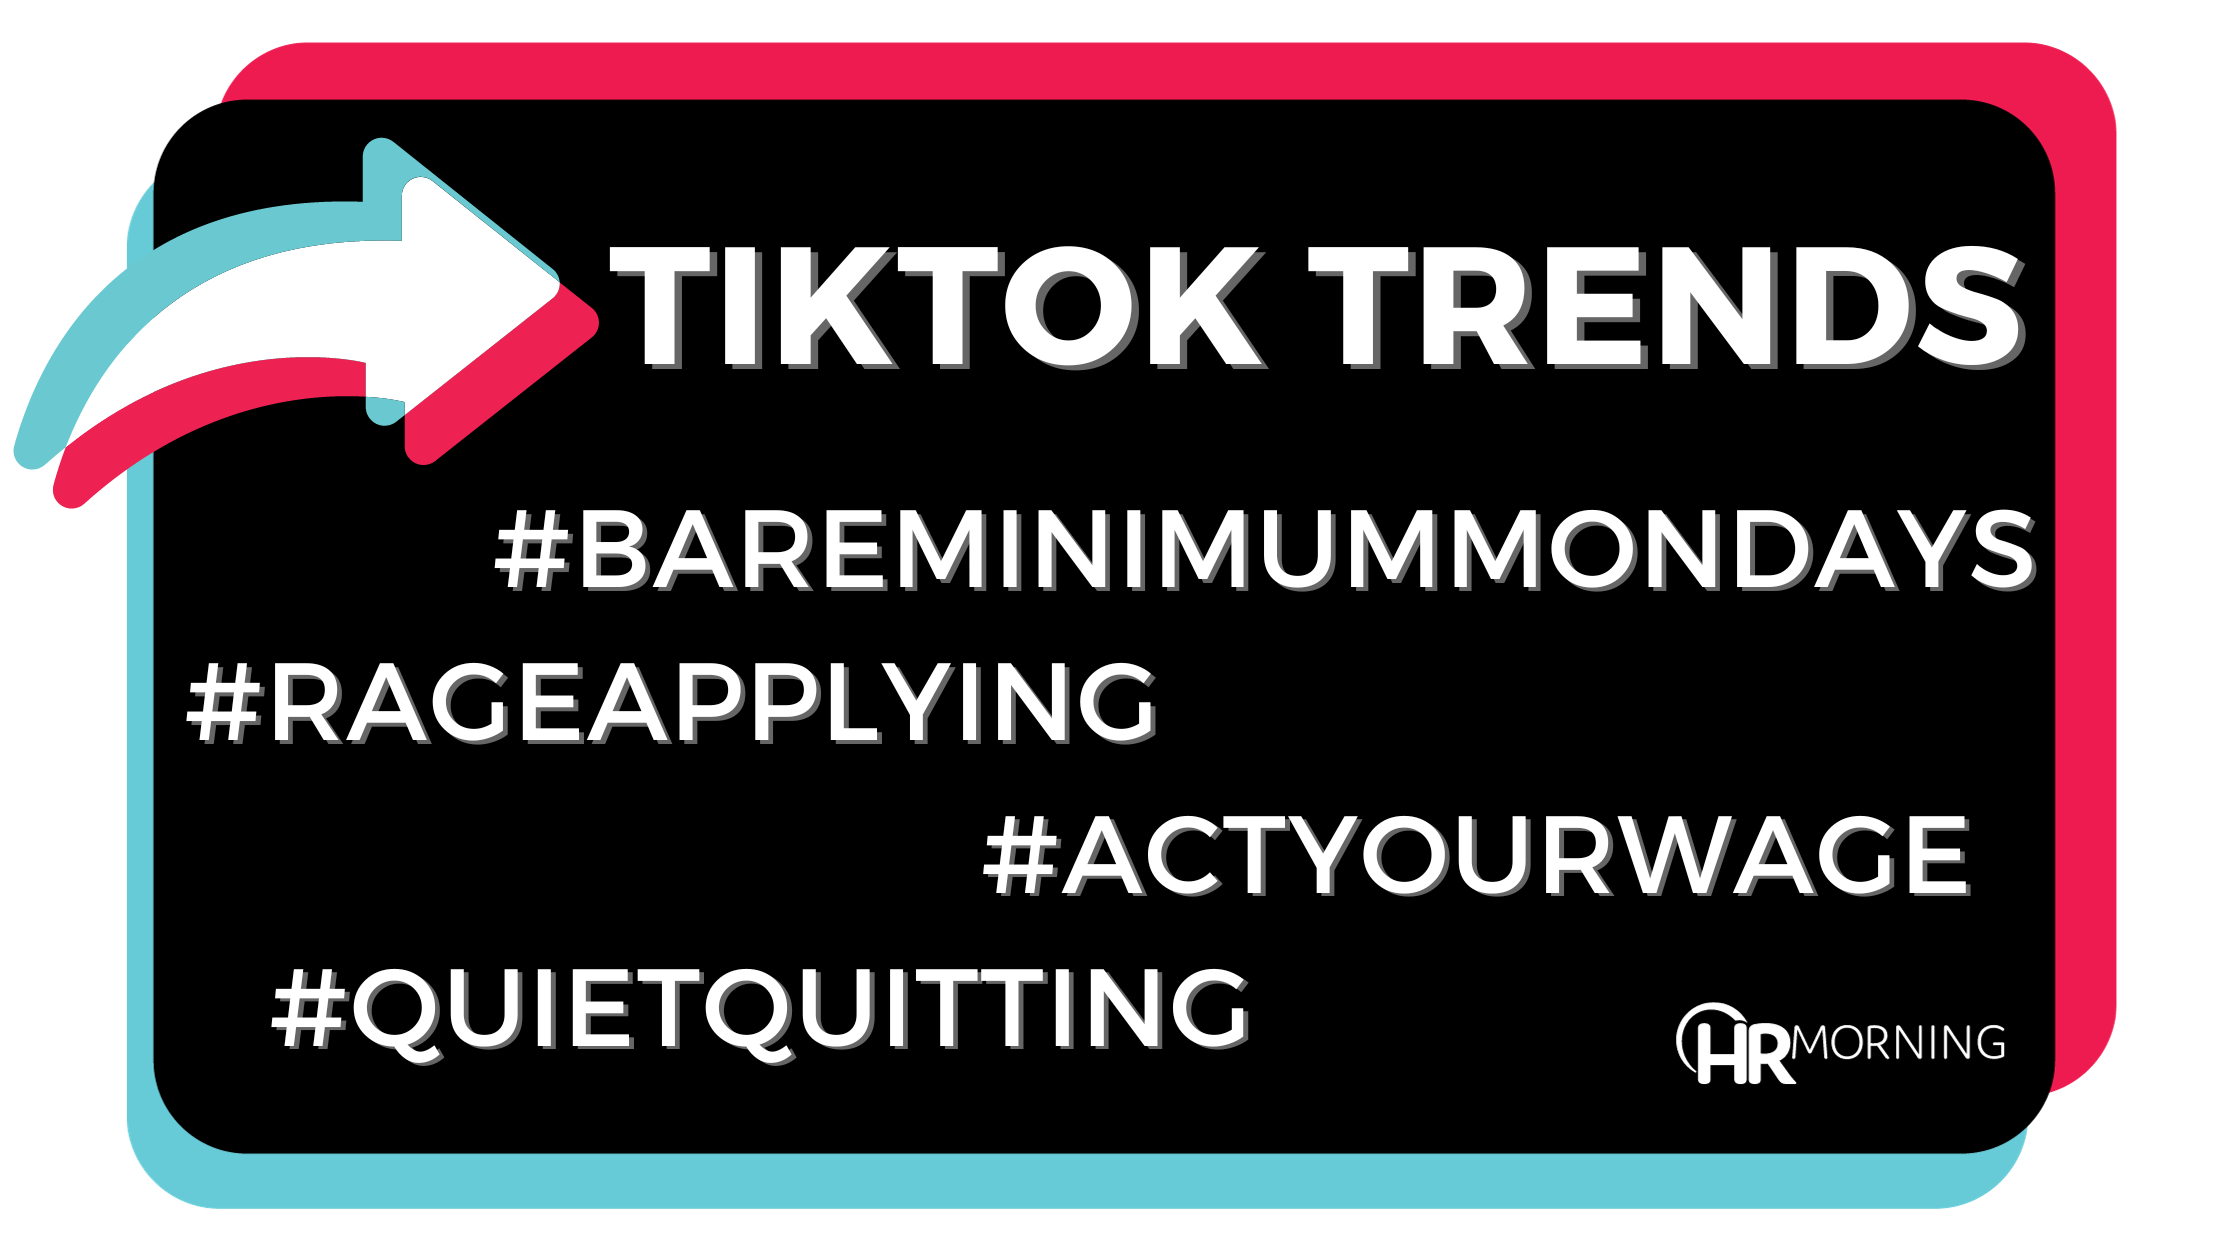 TikTok Trends #BareMinimumMondays #RageApplying #ActYourWage #QuietQuitting